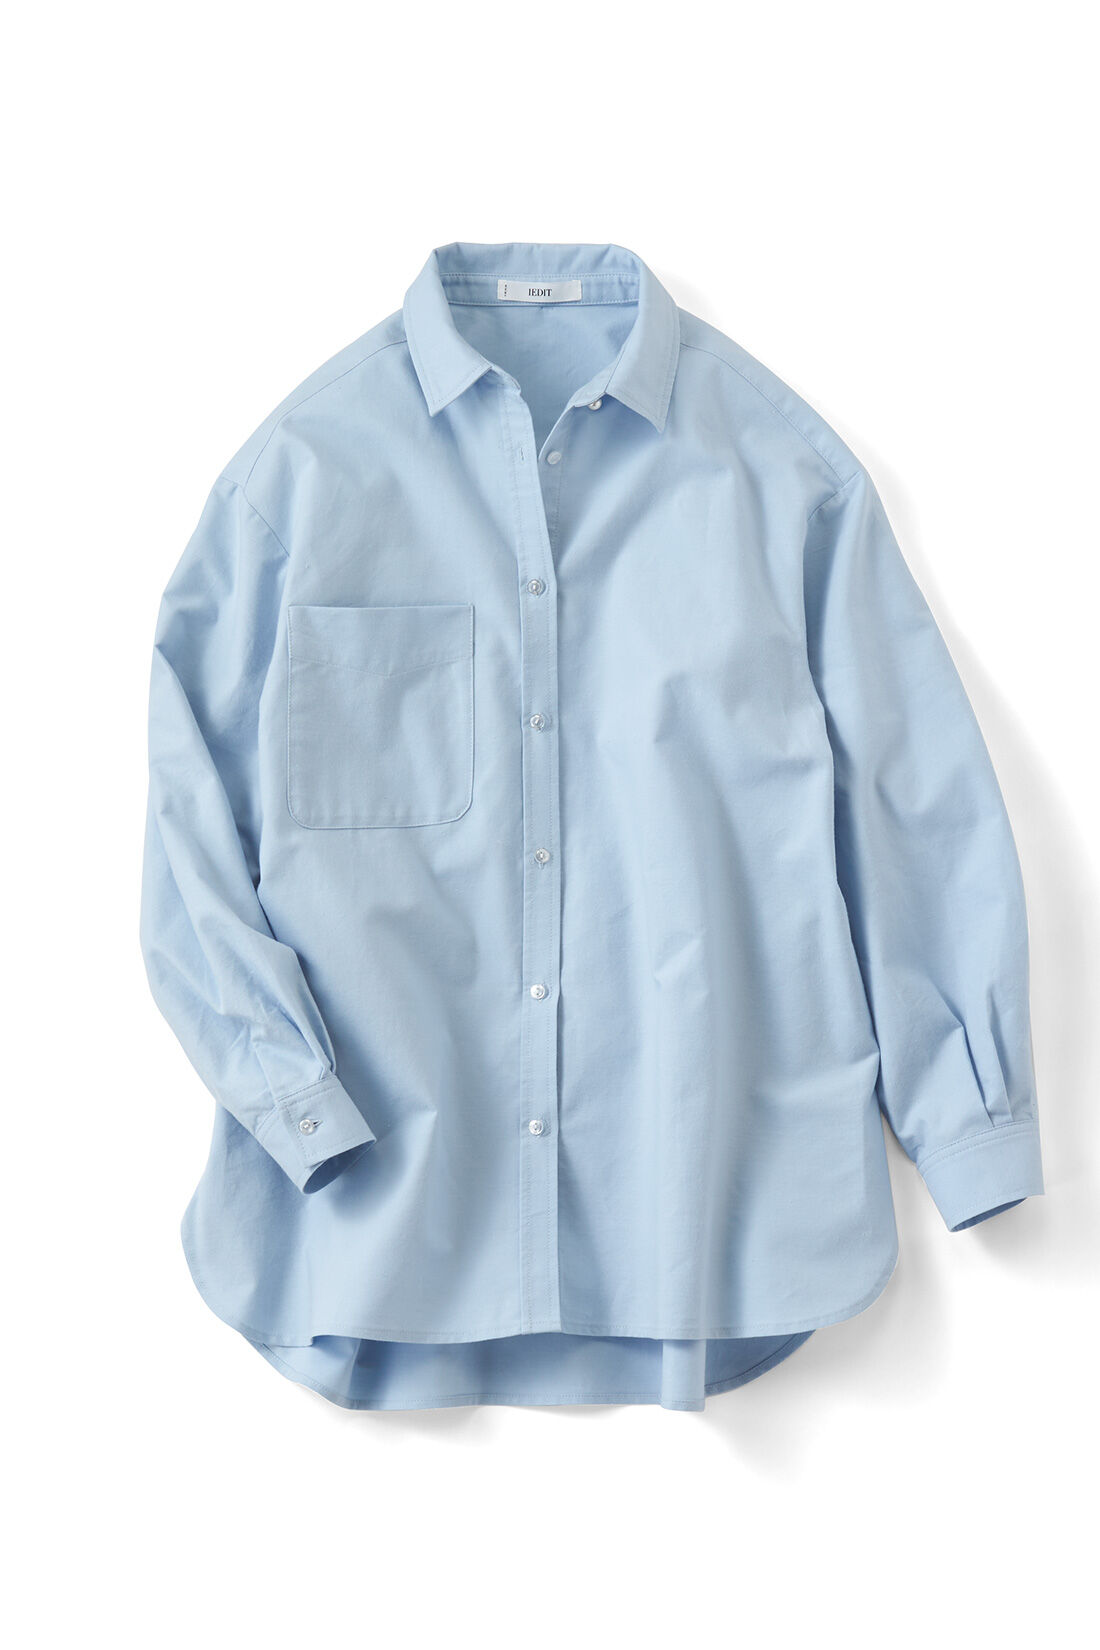 IEDIT|IEDIT[イディット]　バックフレアーデザインがきいた オックスフォード素材のこなれ見えシャツ〈ブルー〉|ブルー